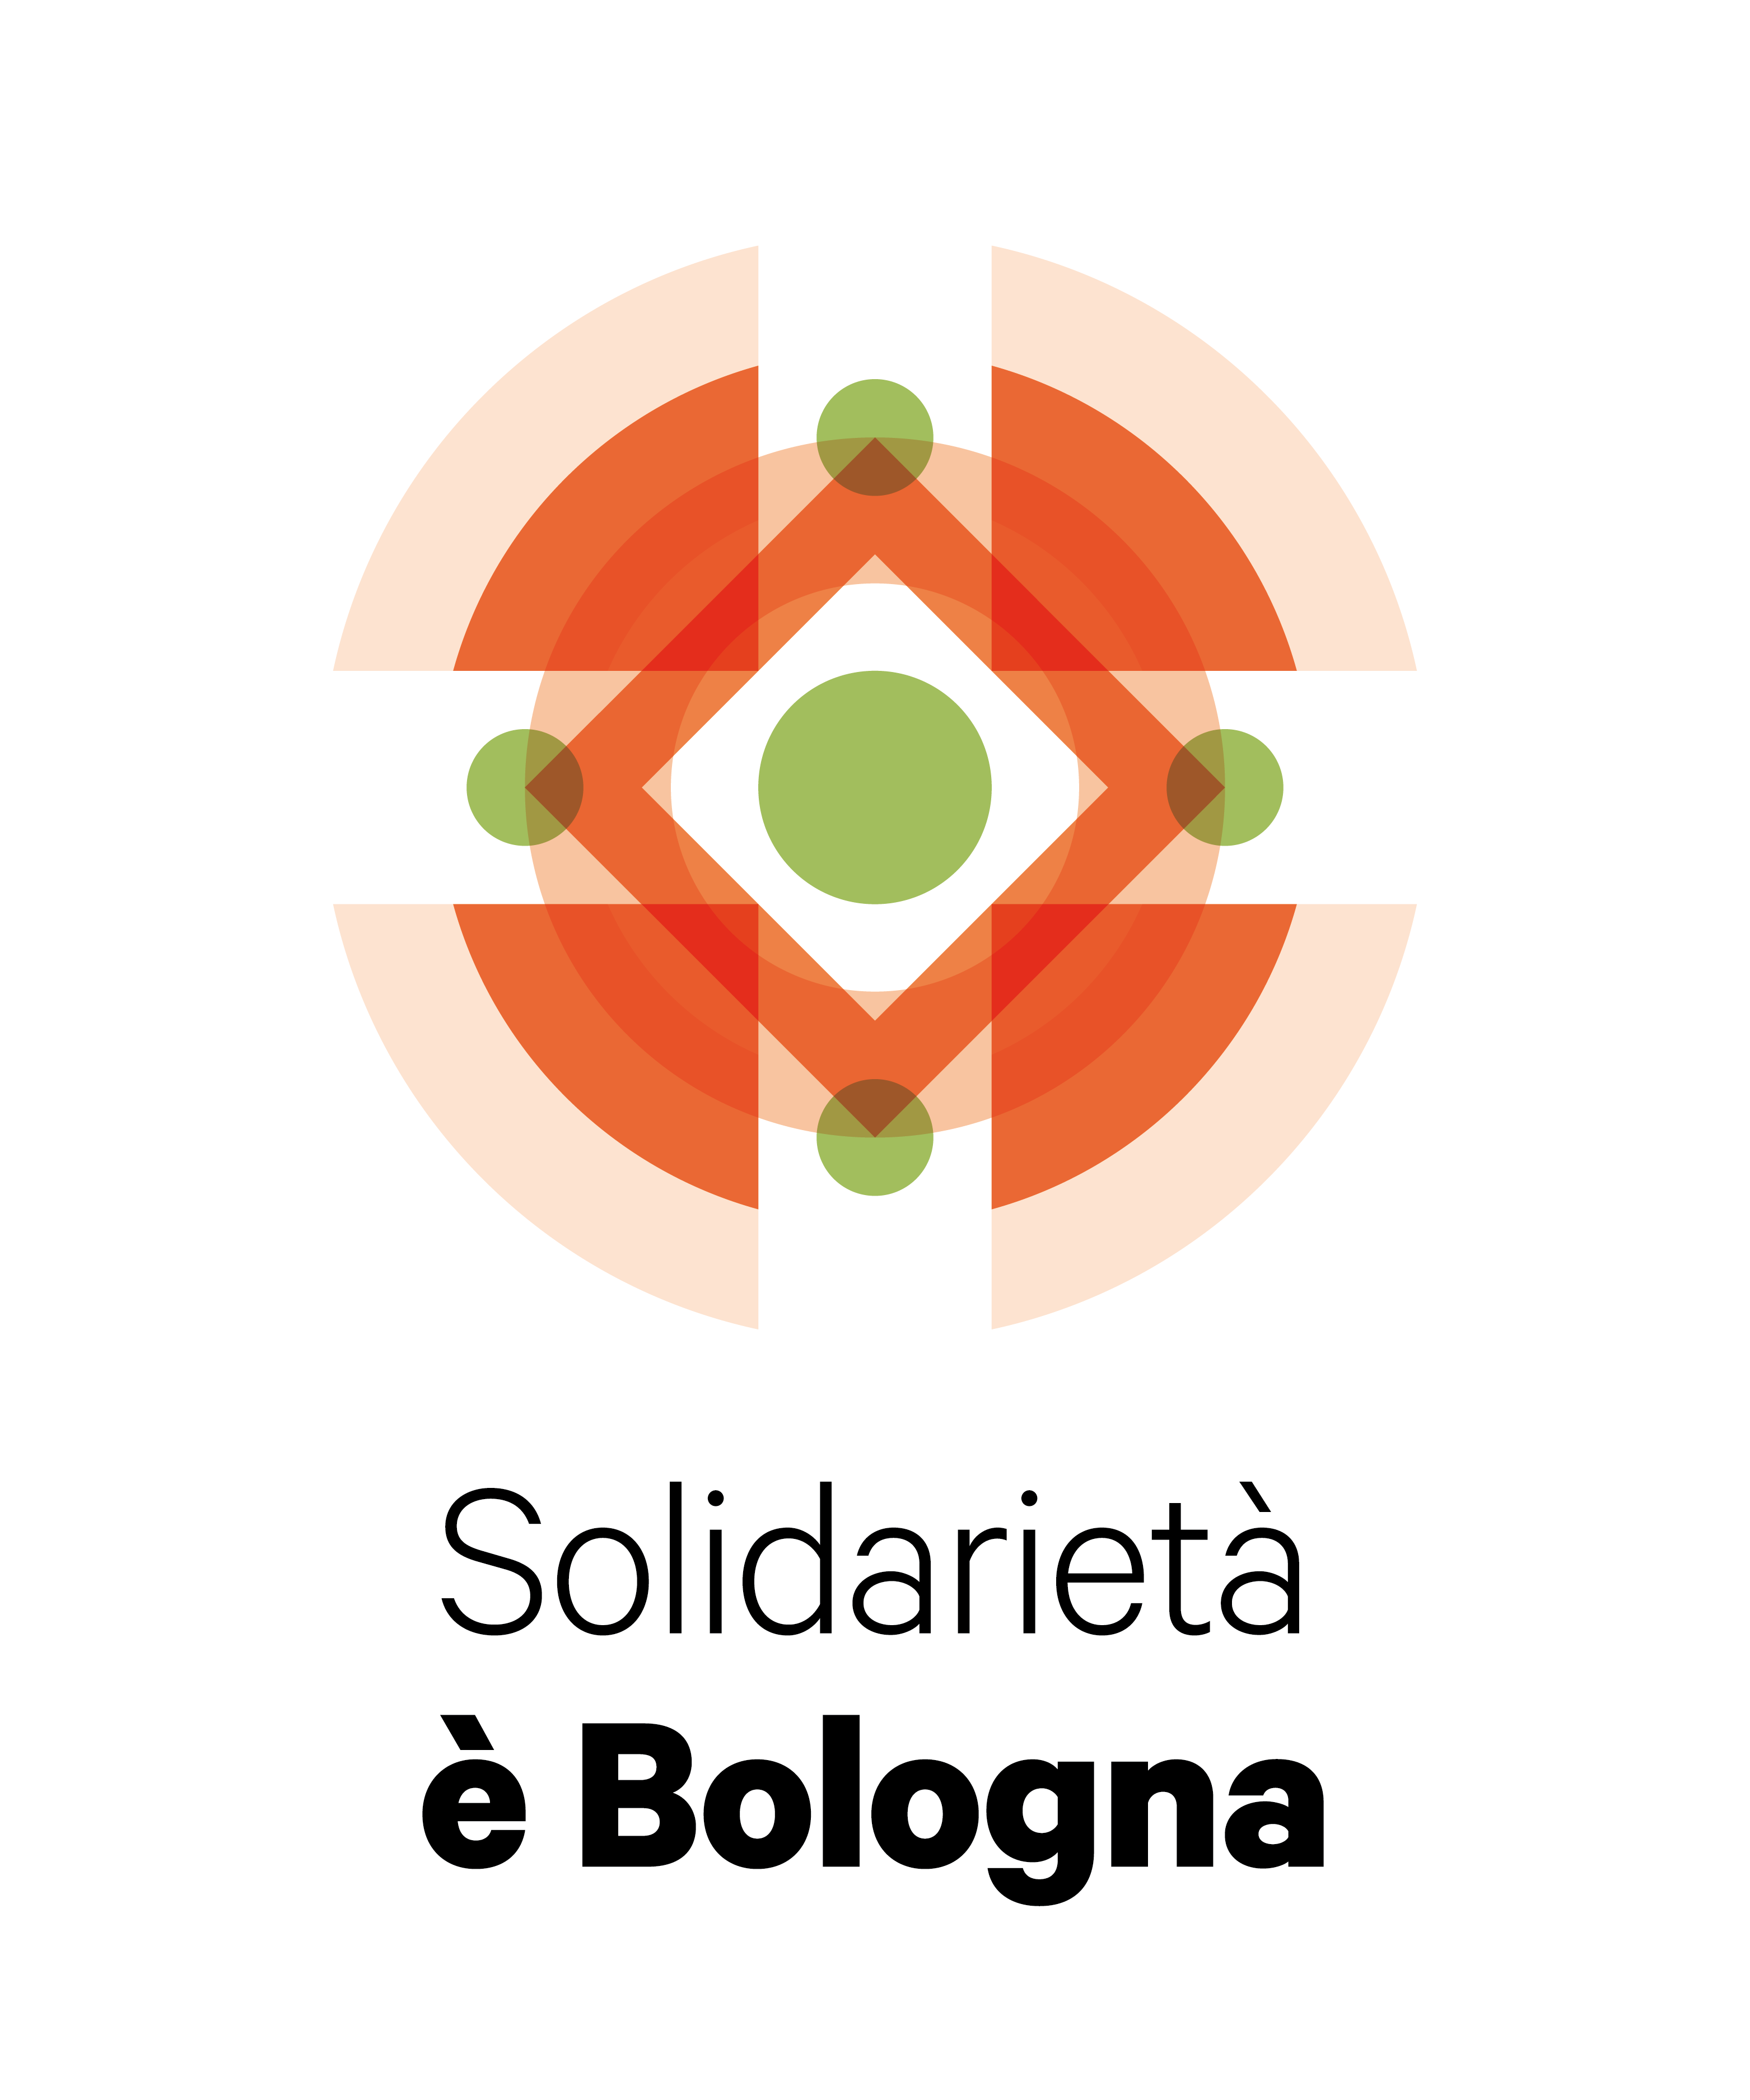 e╠ÇBologna_Solidarieta_COL